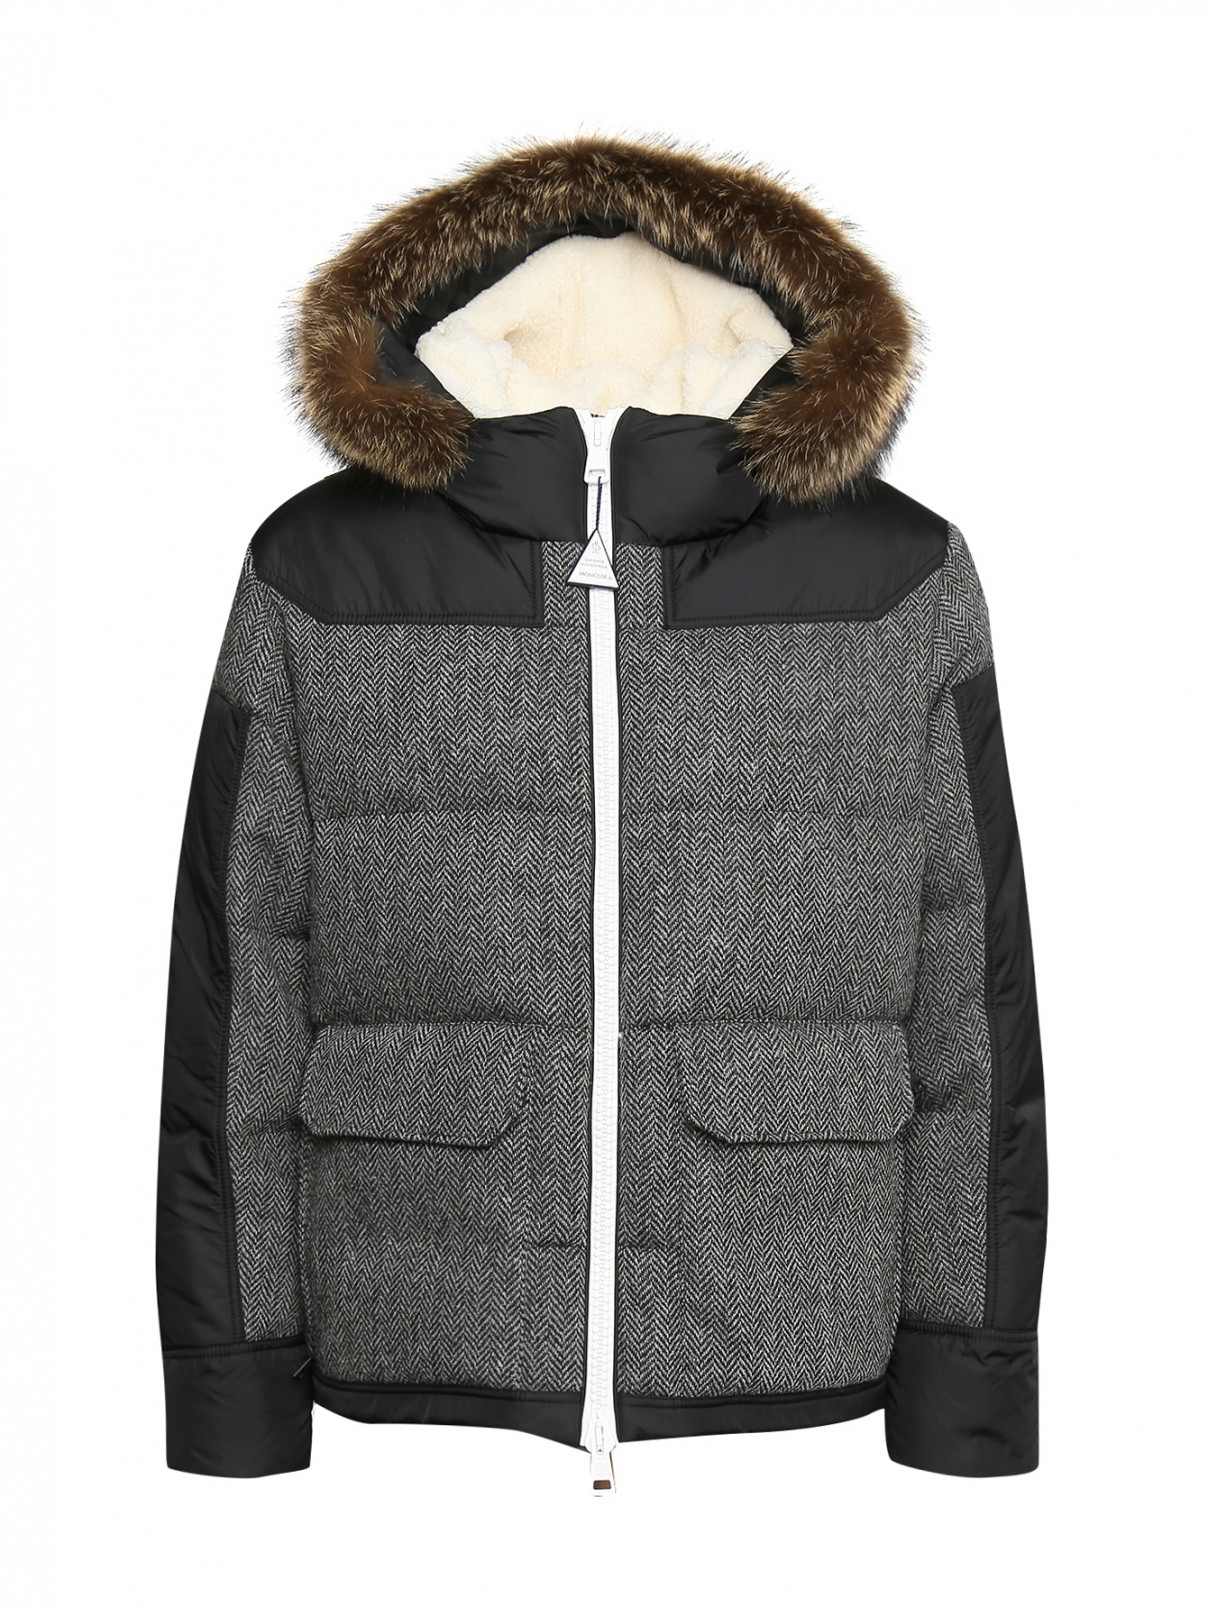 Куртка пуховая на молнии с капюшоном Moncler  –  Общий вид  – Цвет:  Черный